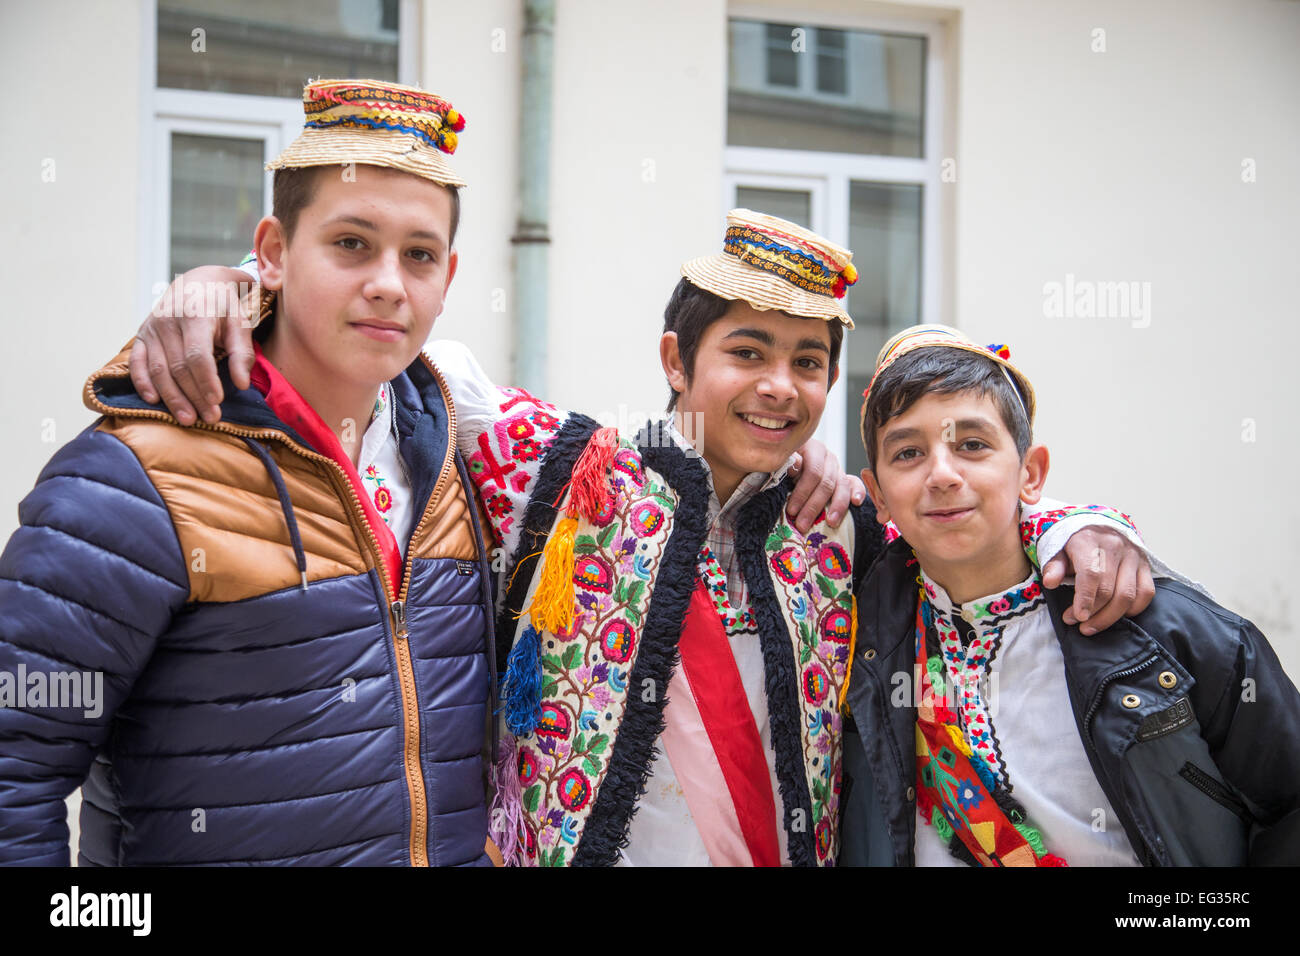 Costume traditionnel roumain en Transylvanie Sigisoara avec les gens portant des chapeaux de paille et de feutre célébrer une journée Saints Banque D'Images